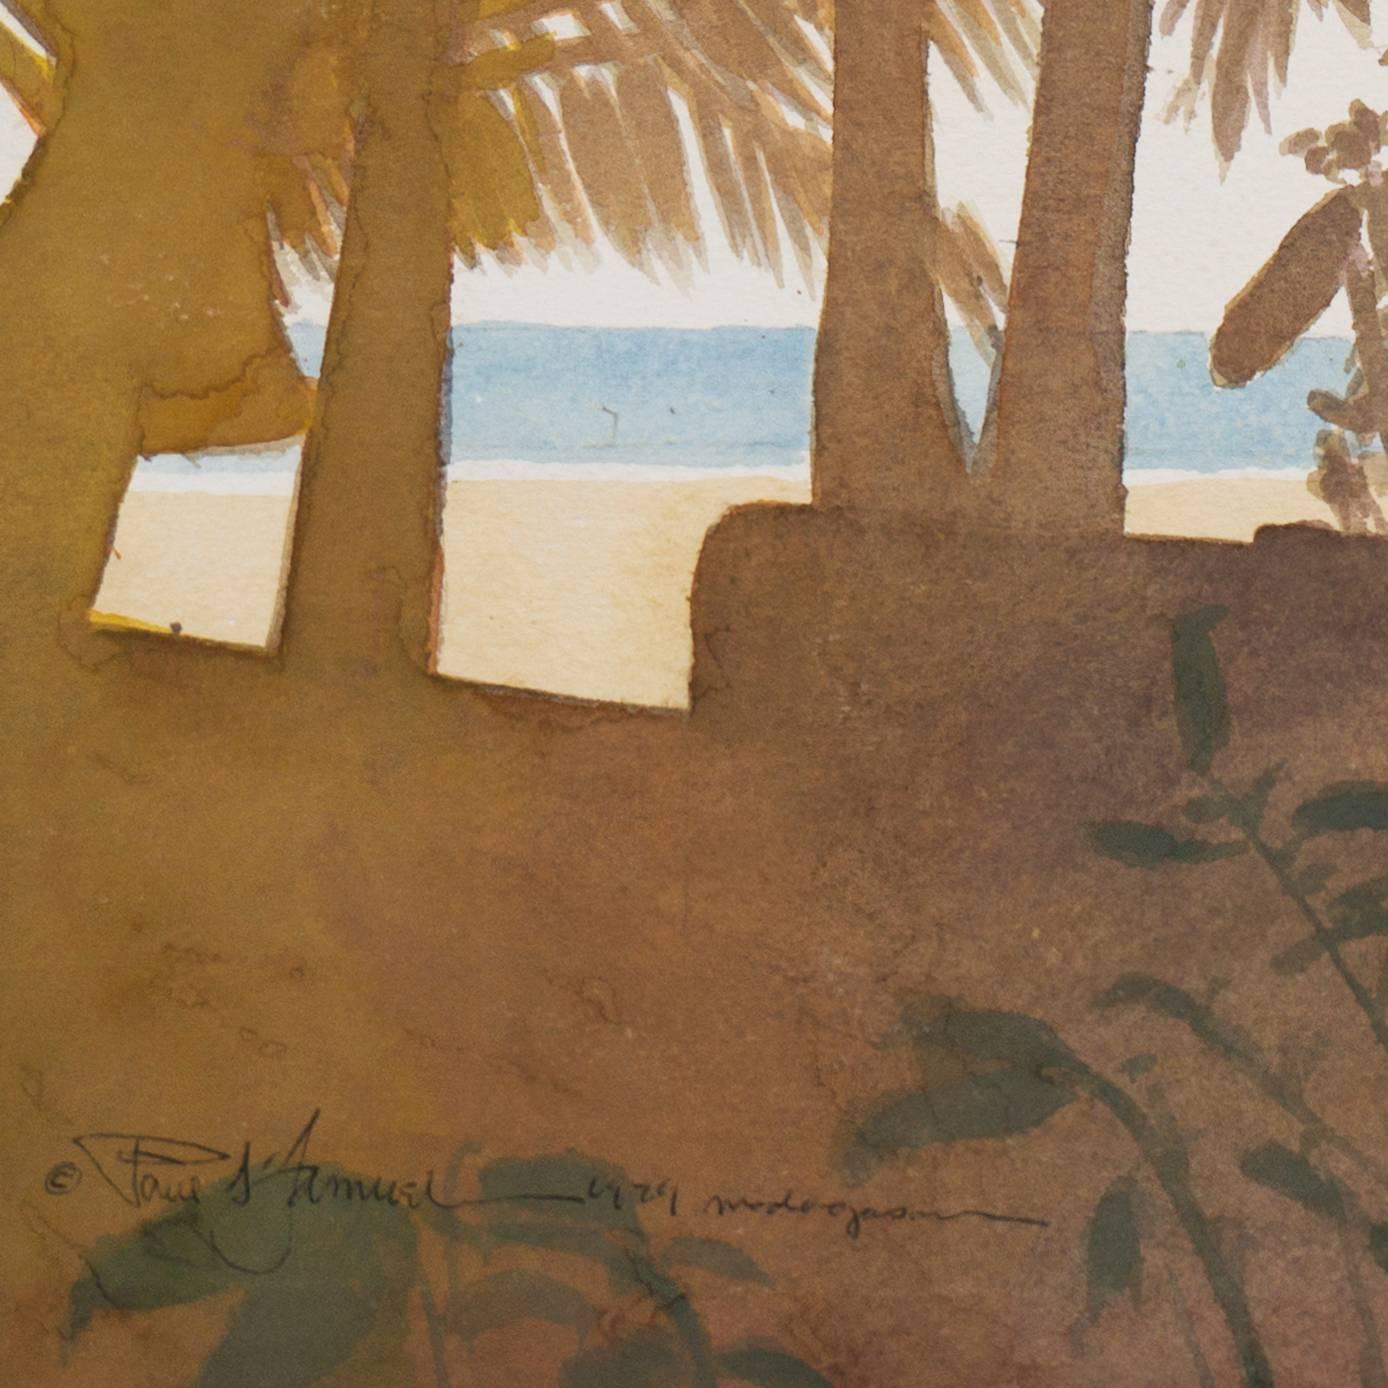 Une aquarelle élégante et atmosphérique montrant une veste en lin à rayures colorées séchant dans la brise avec une vue à travers un peuplement de palmiers vers une plage tropicale idyllique et l'océan Indien au-delà.

Signé en bas à gauche, 